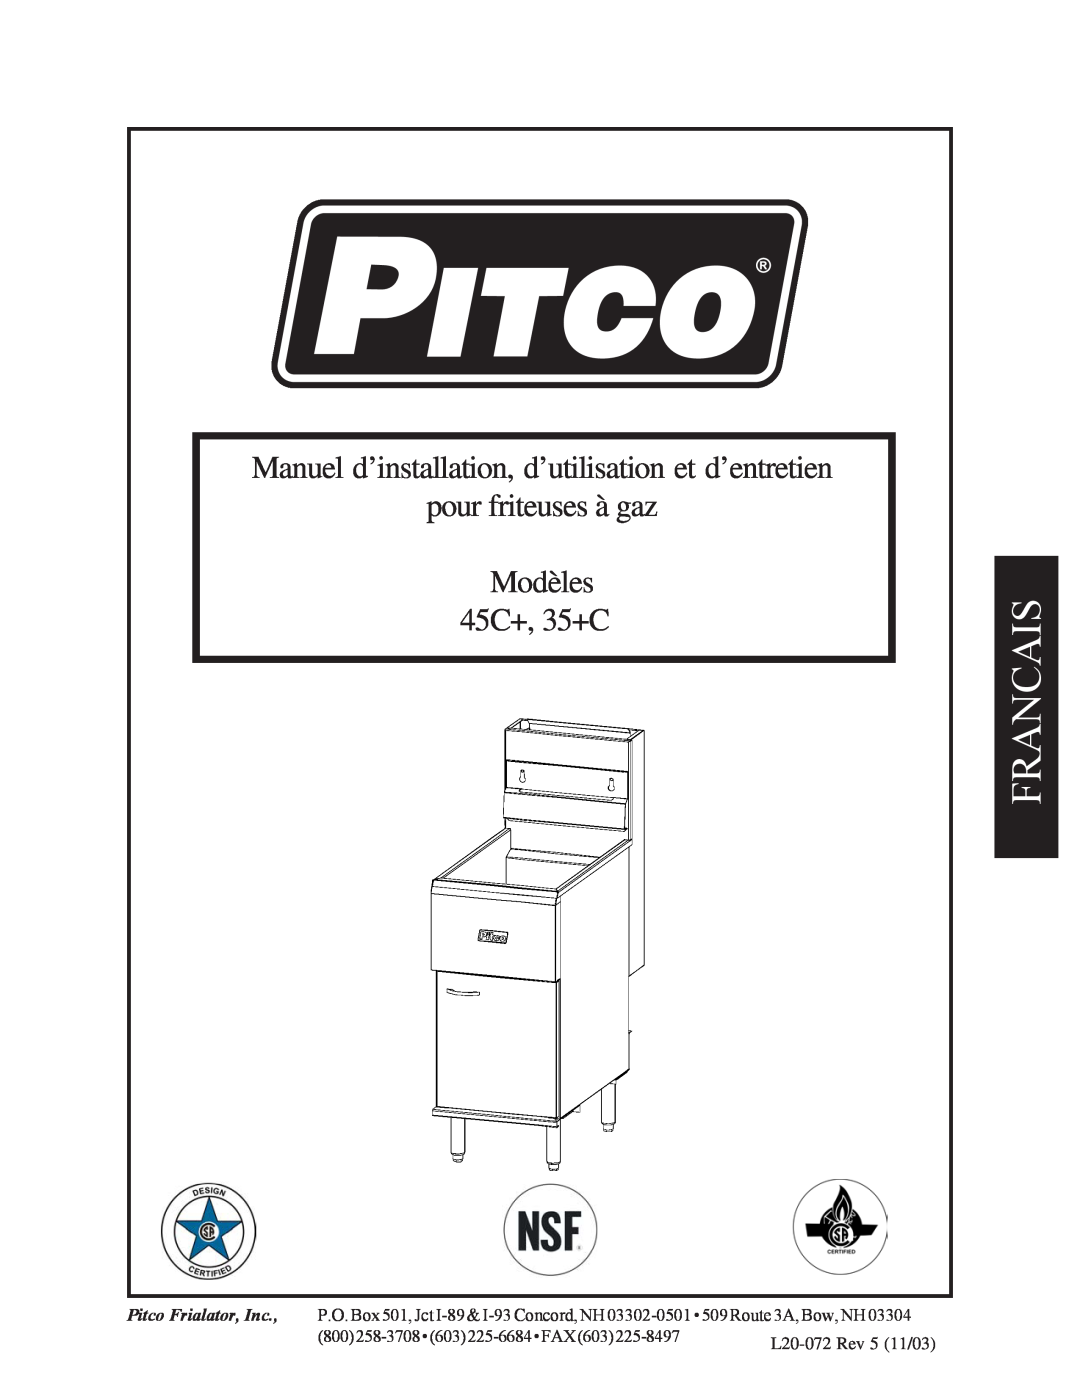 Pitco Frialator 35C+ 45C+, 35+C, Modèles, Manuel d’installation, d’utilisation et d’entretien, pour friteuses à gaz 